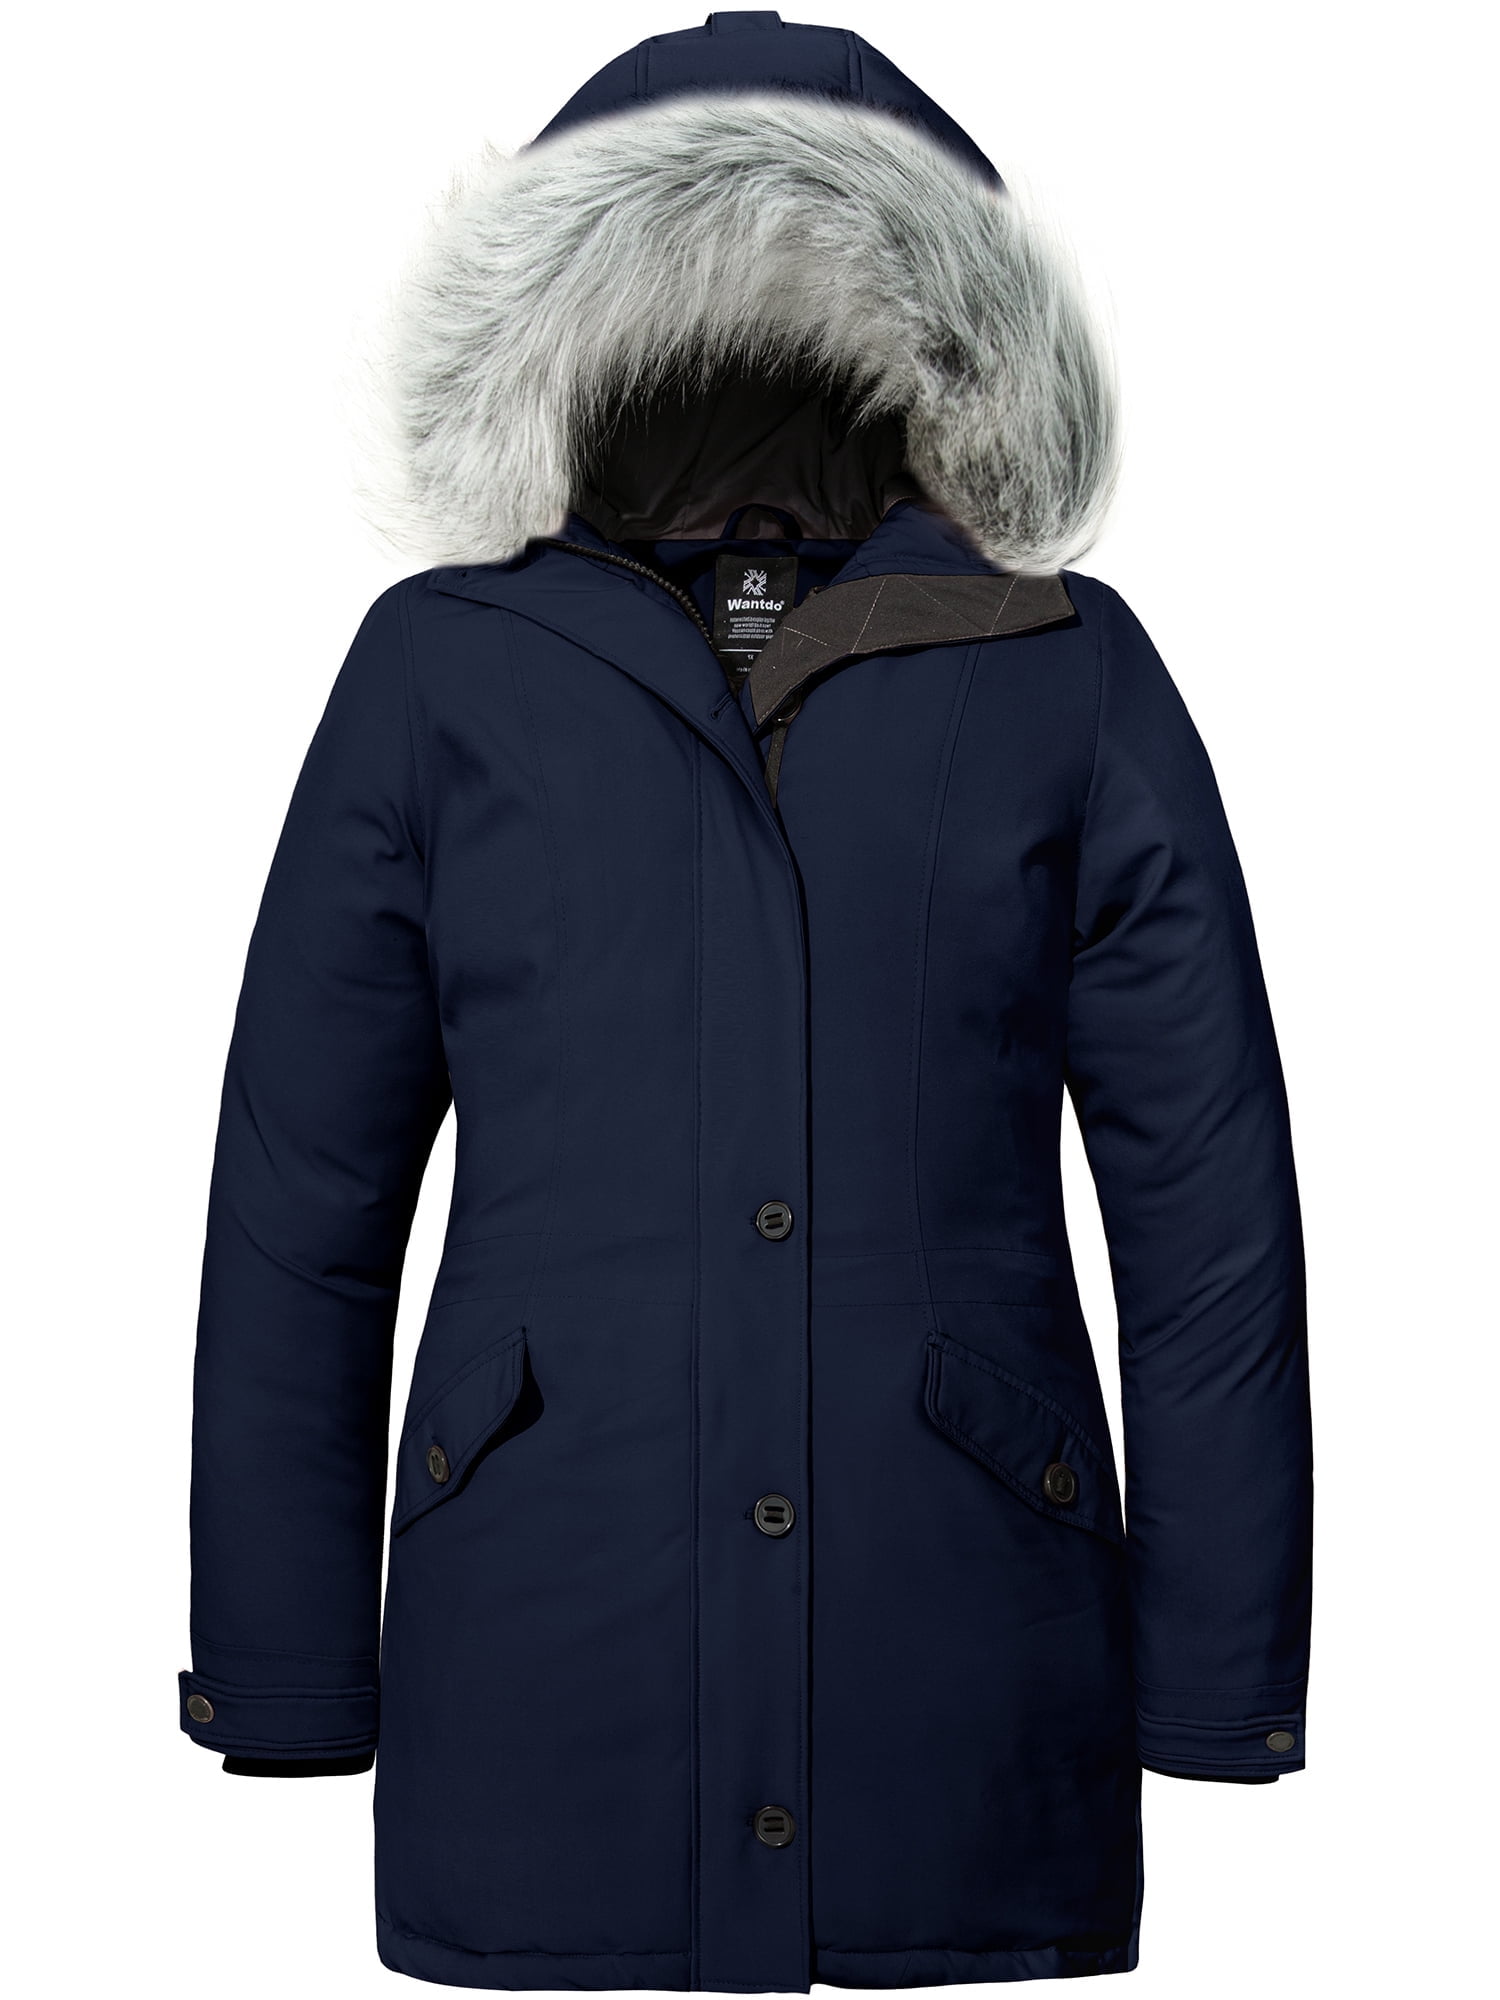 Wantdo Women's Plus Size Parka Winter Coat Waterproof Casual Puffer ...